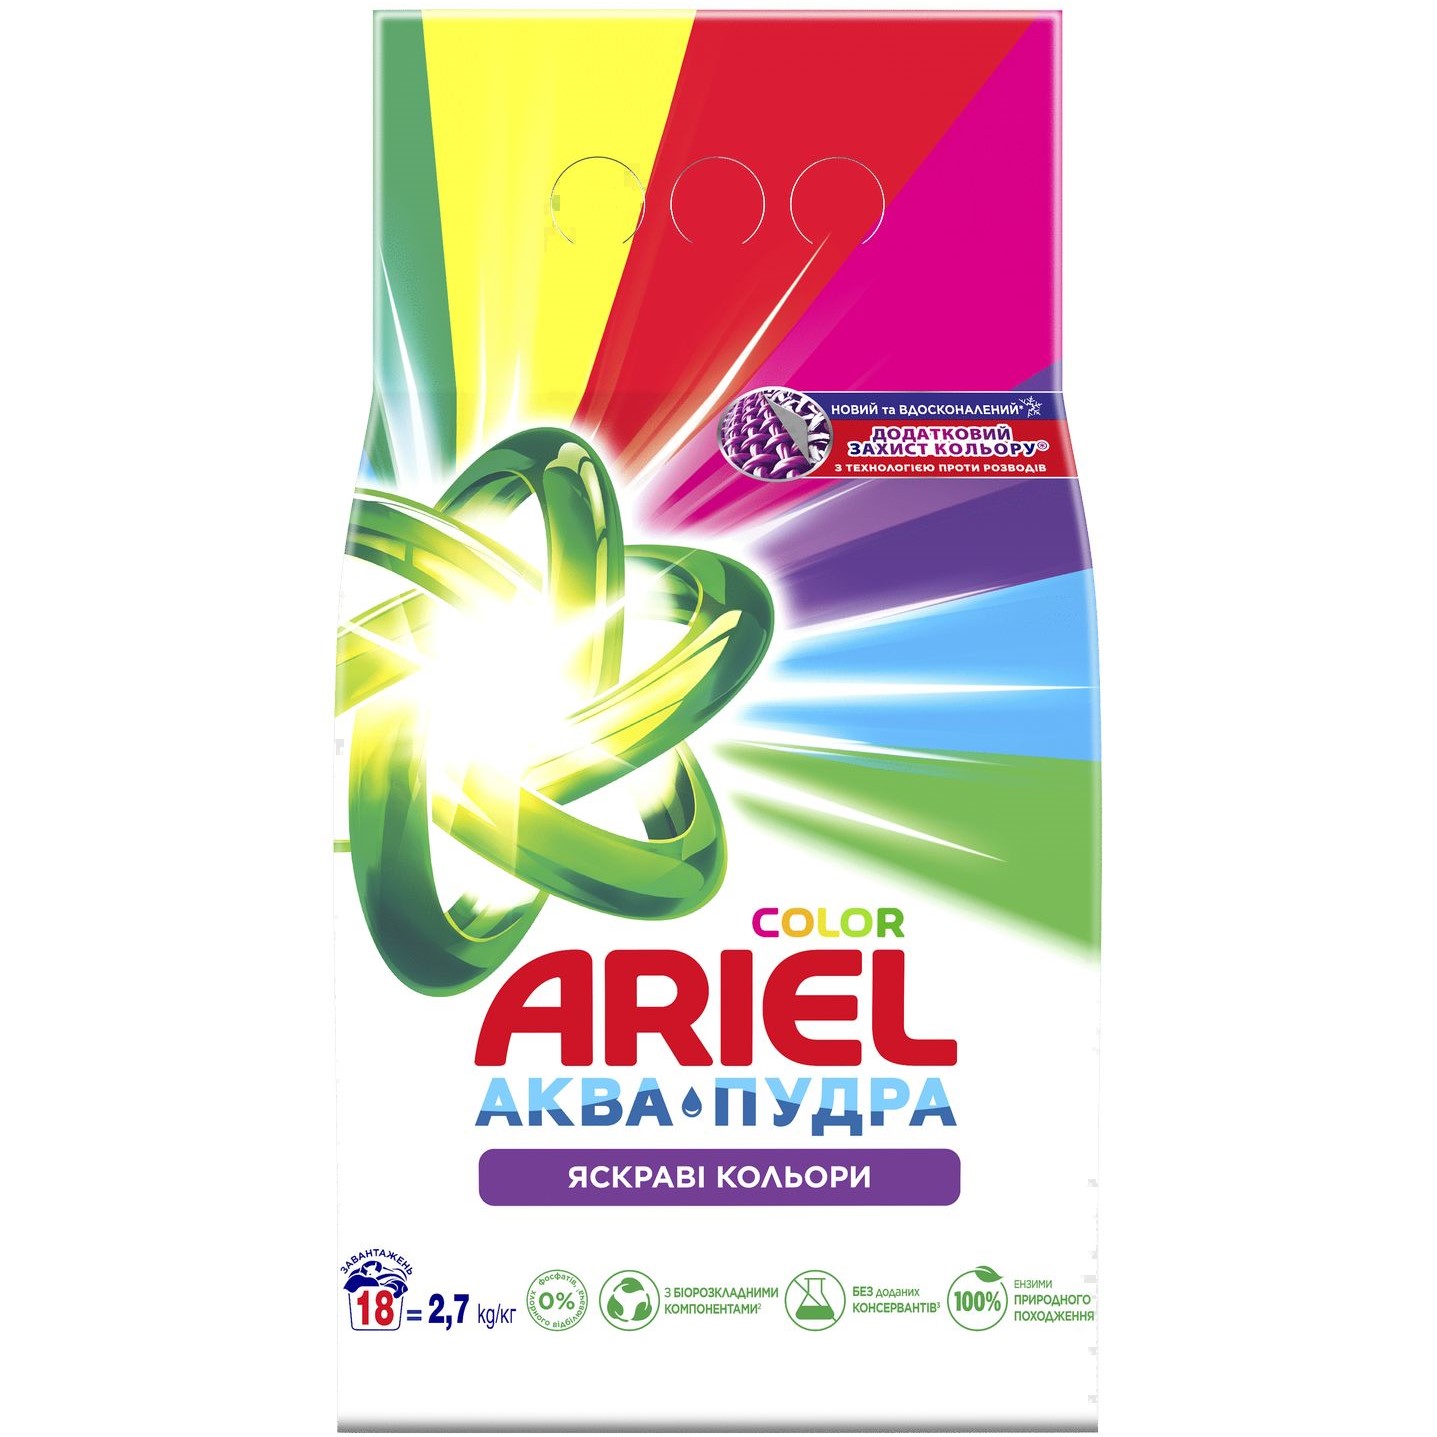 Пральний порошок Ariel Аква-Пудра Color Яскраві кольори 2.7 кг - фото 1